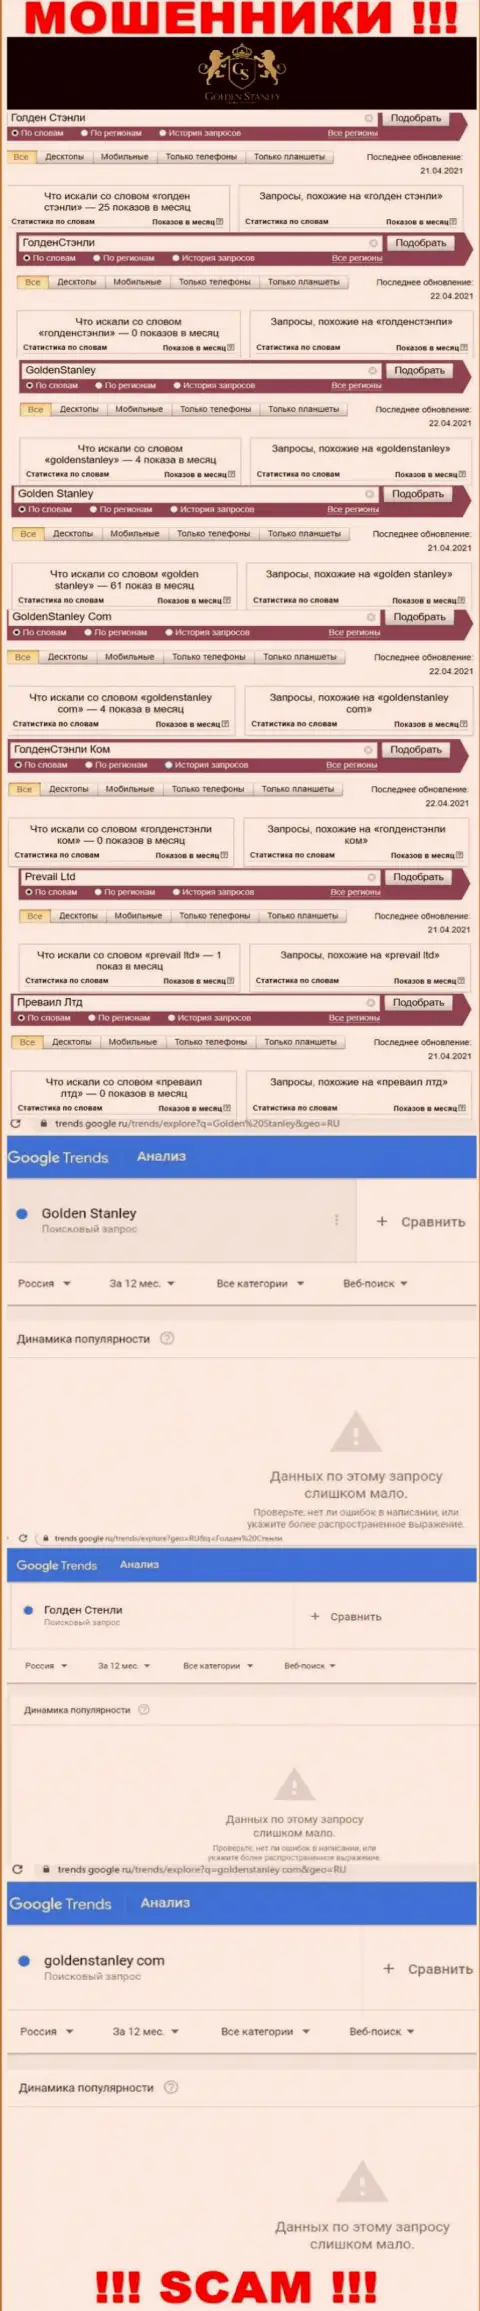 Статистика онлайн запросов в поисковиках всемирной сети относительно мошенников GoldenStanley